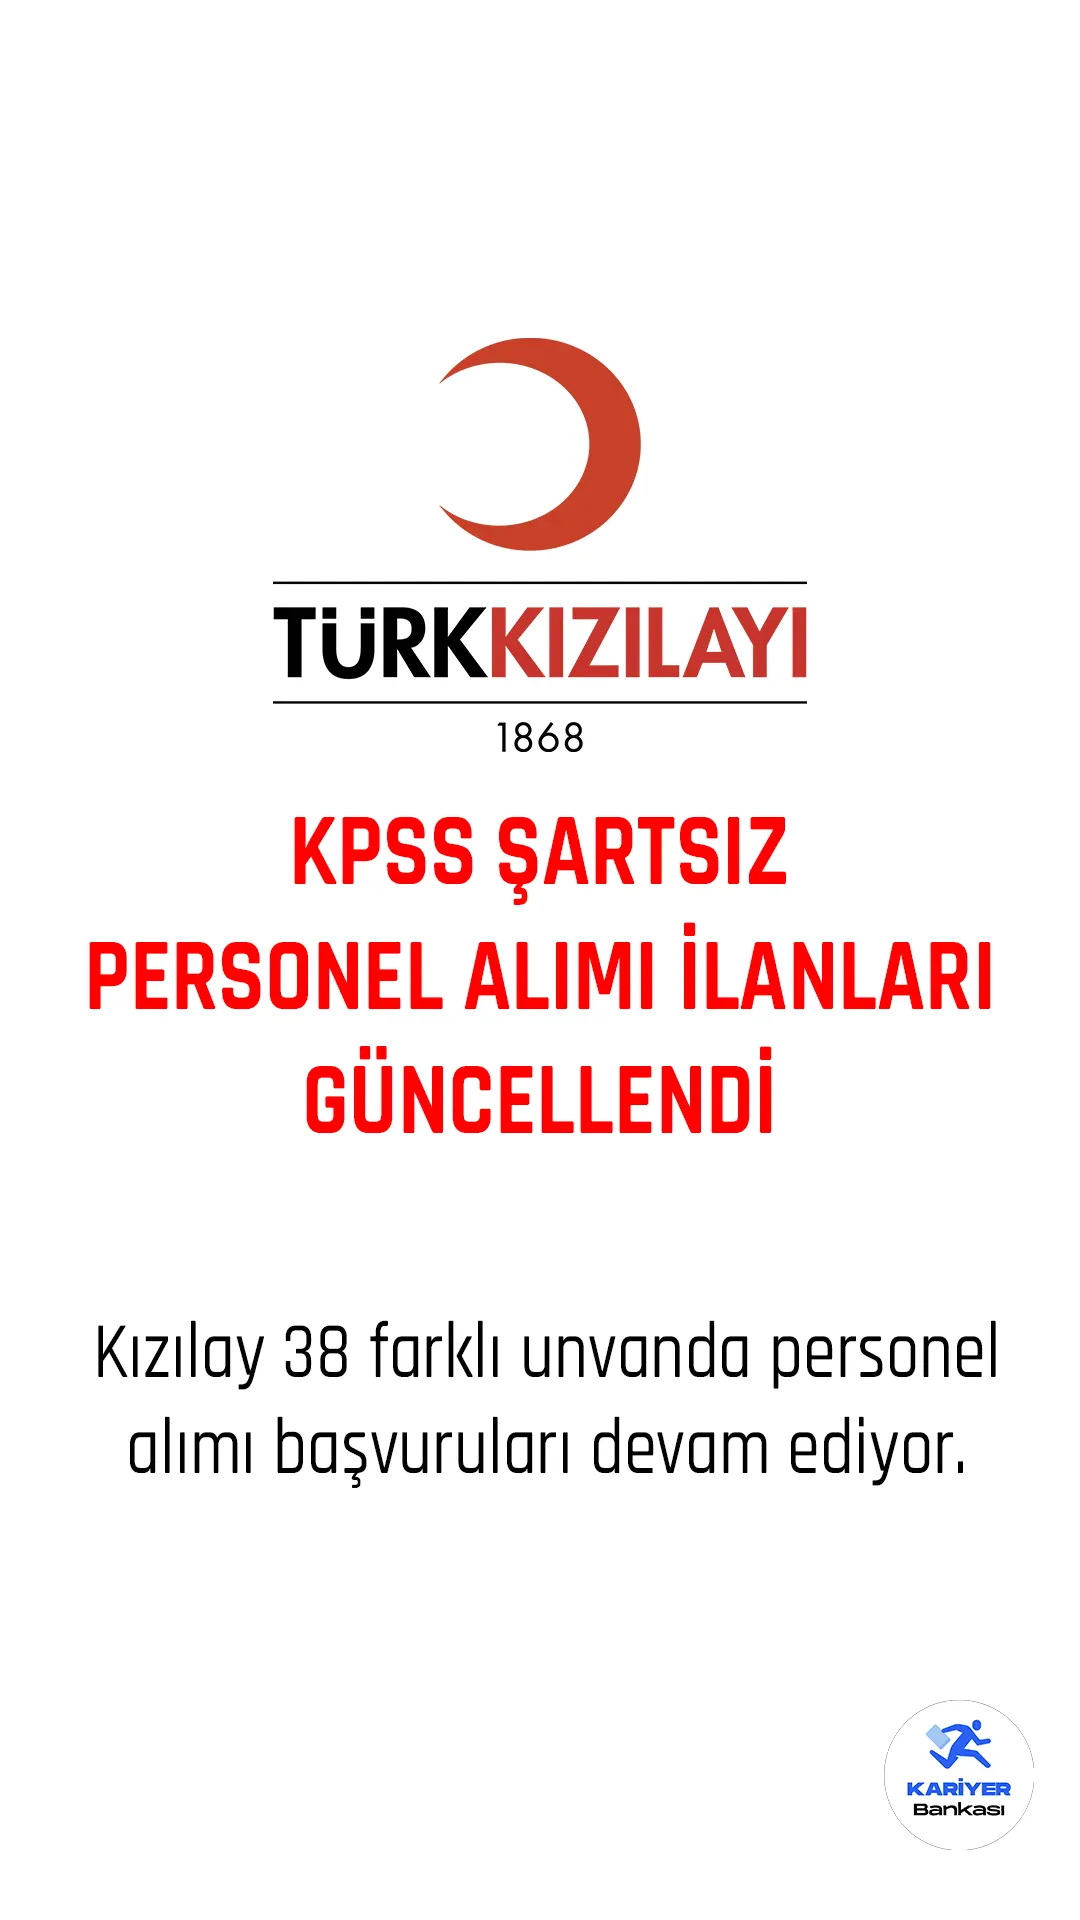 Kızılay KPSS şartsız personel alımı yeni ilanları yayımlanmaya devam ediyor.